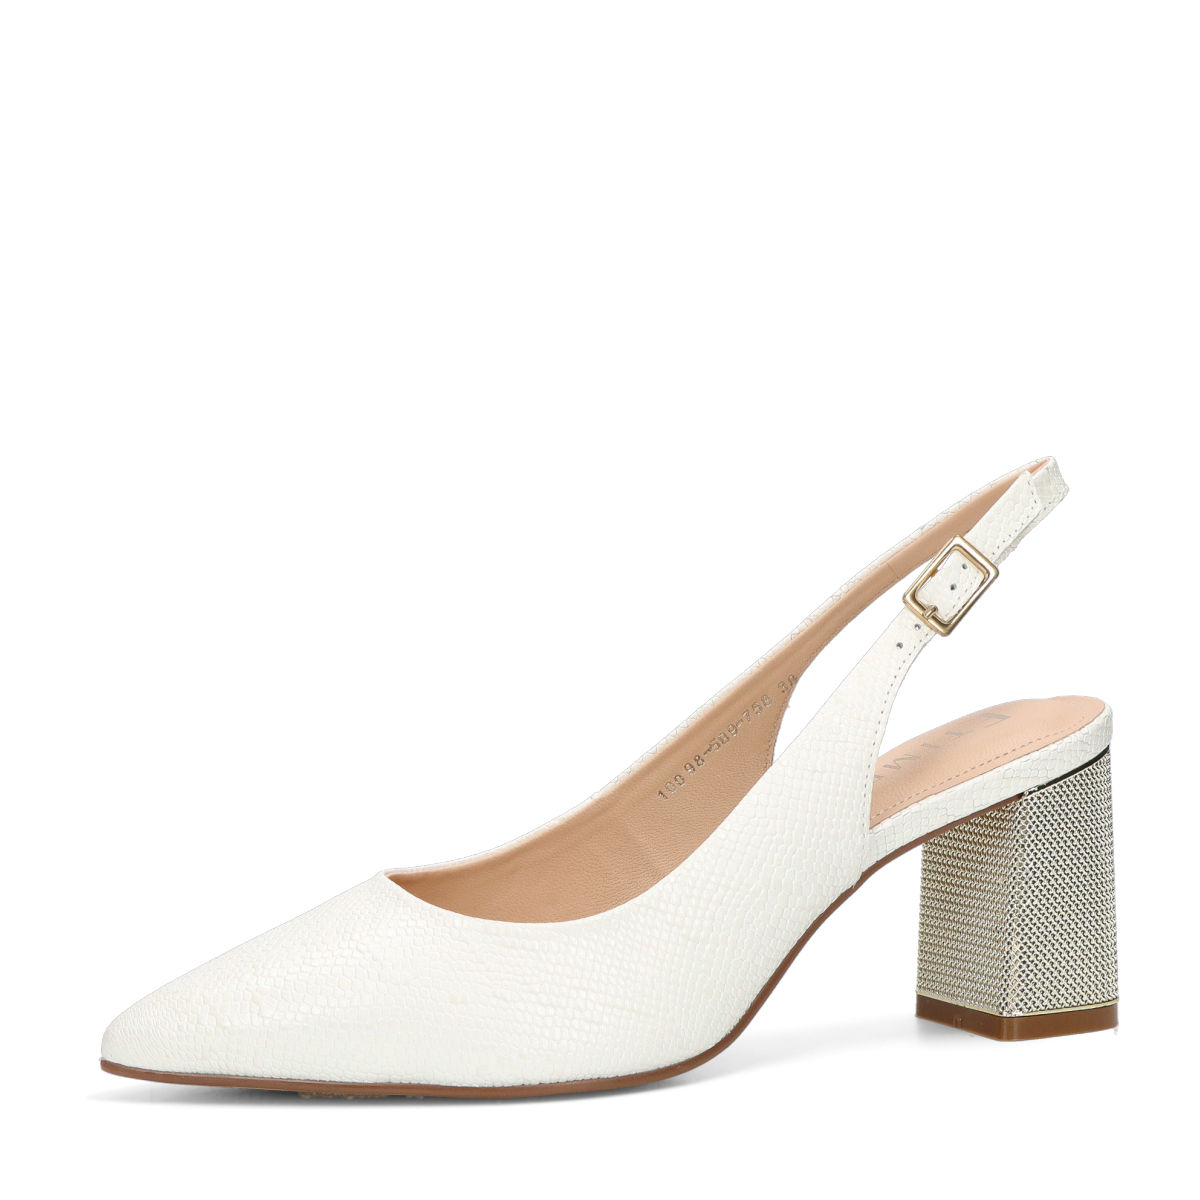 ETIMEĒ dámské elegantní sandály - bílé - 37